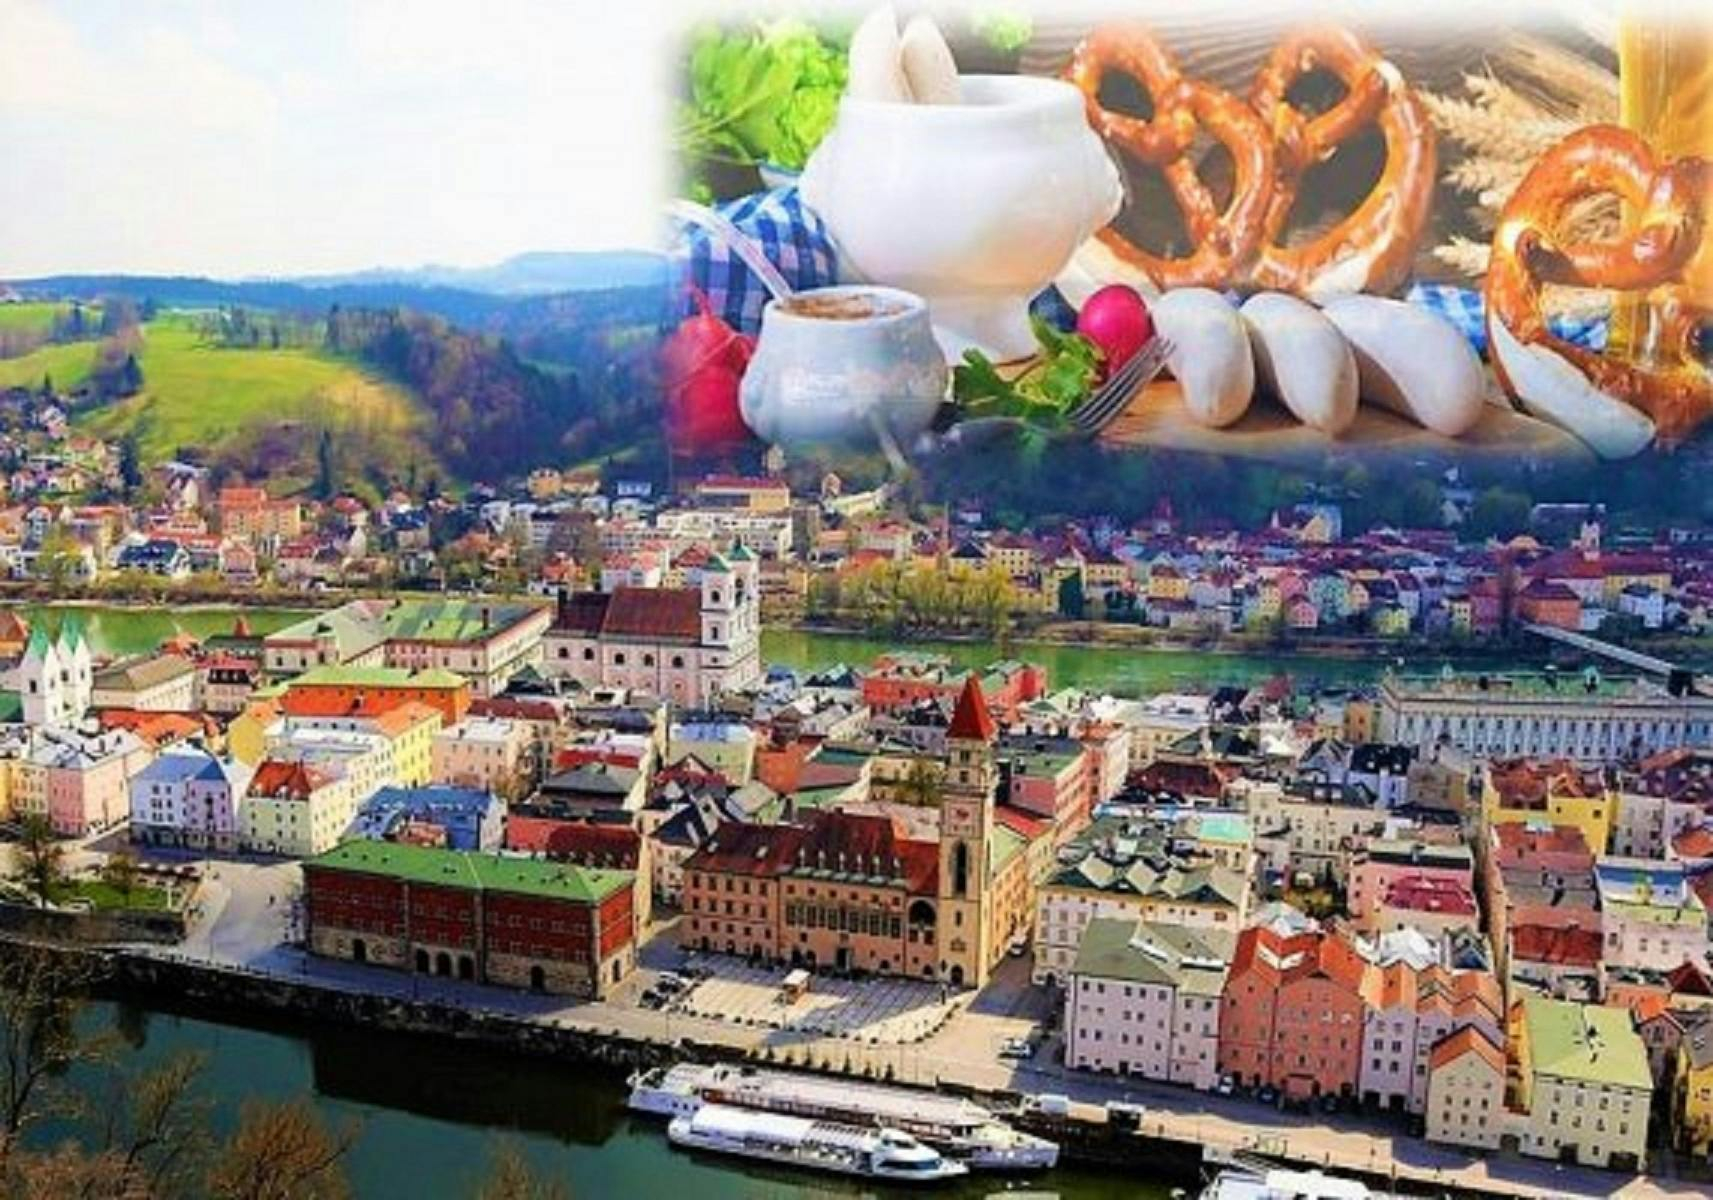 Rally de aventura en Passau "un thriller vegano"